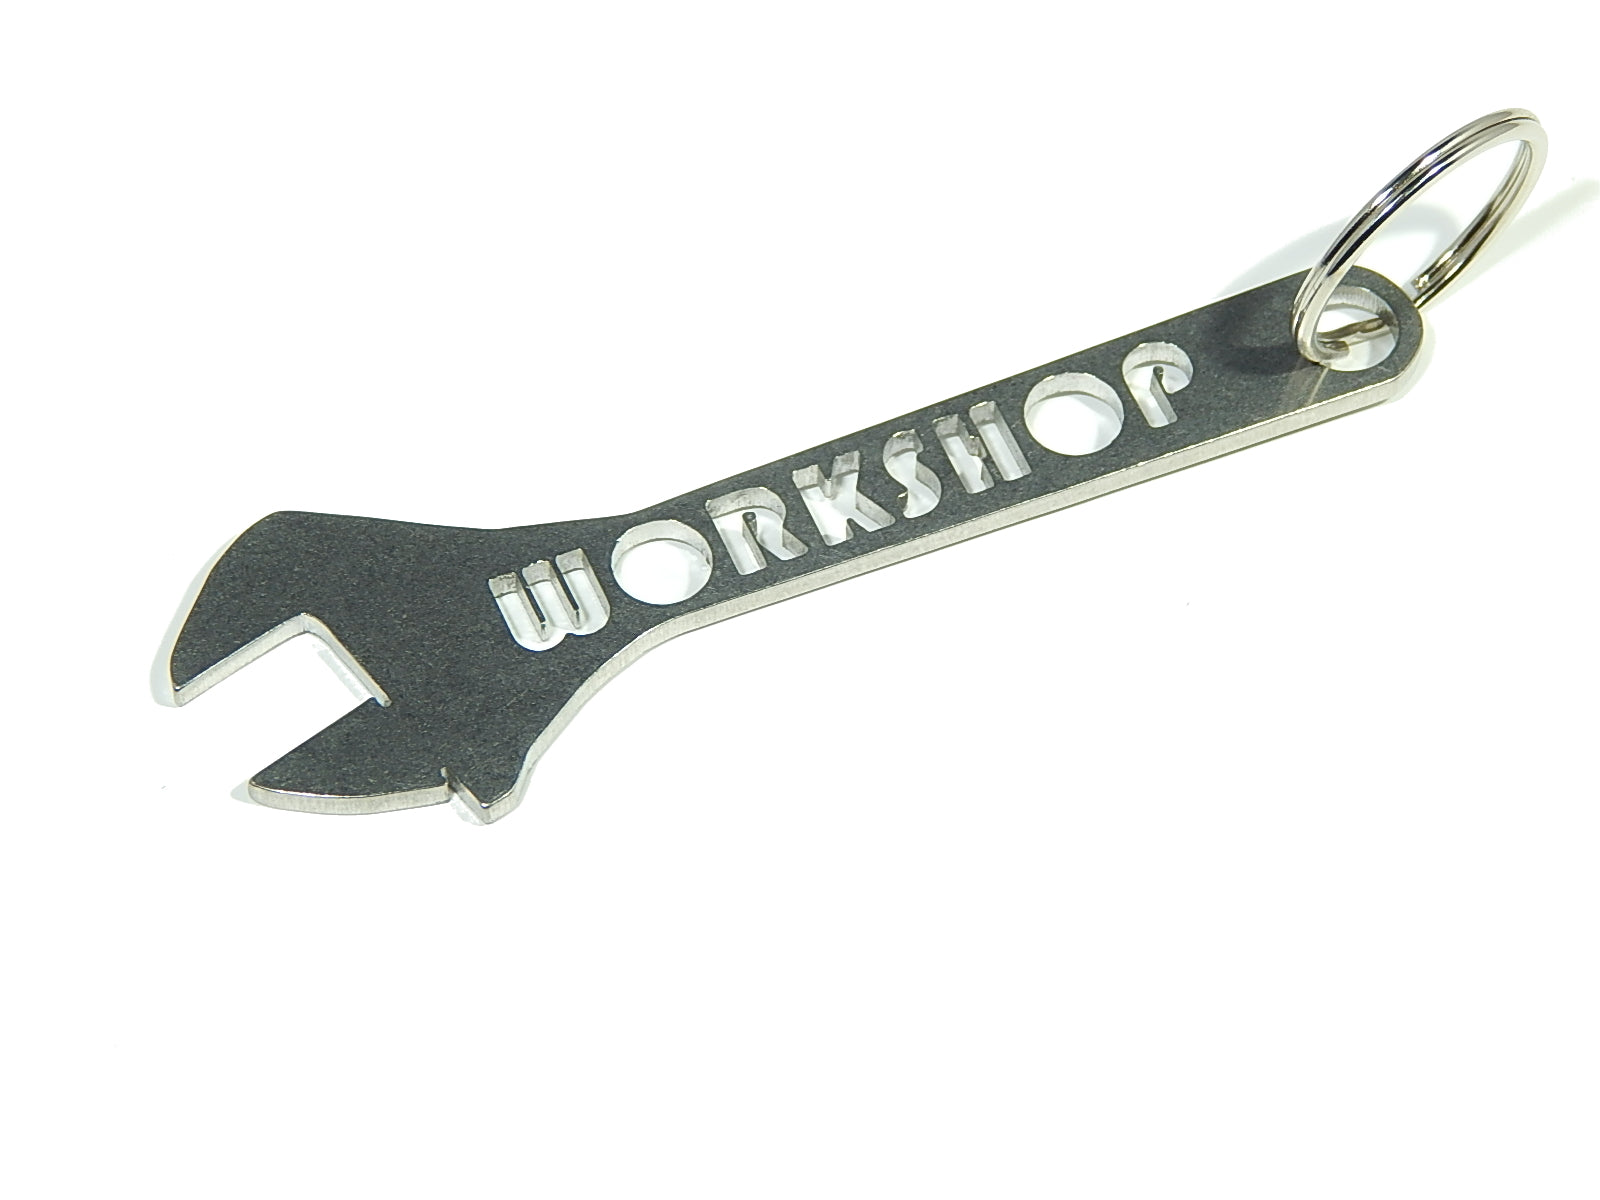 Workshop - DisagrEE - keychain - Schlüsselanhänger